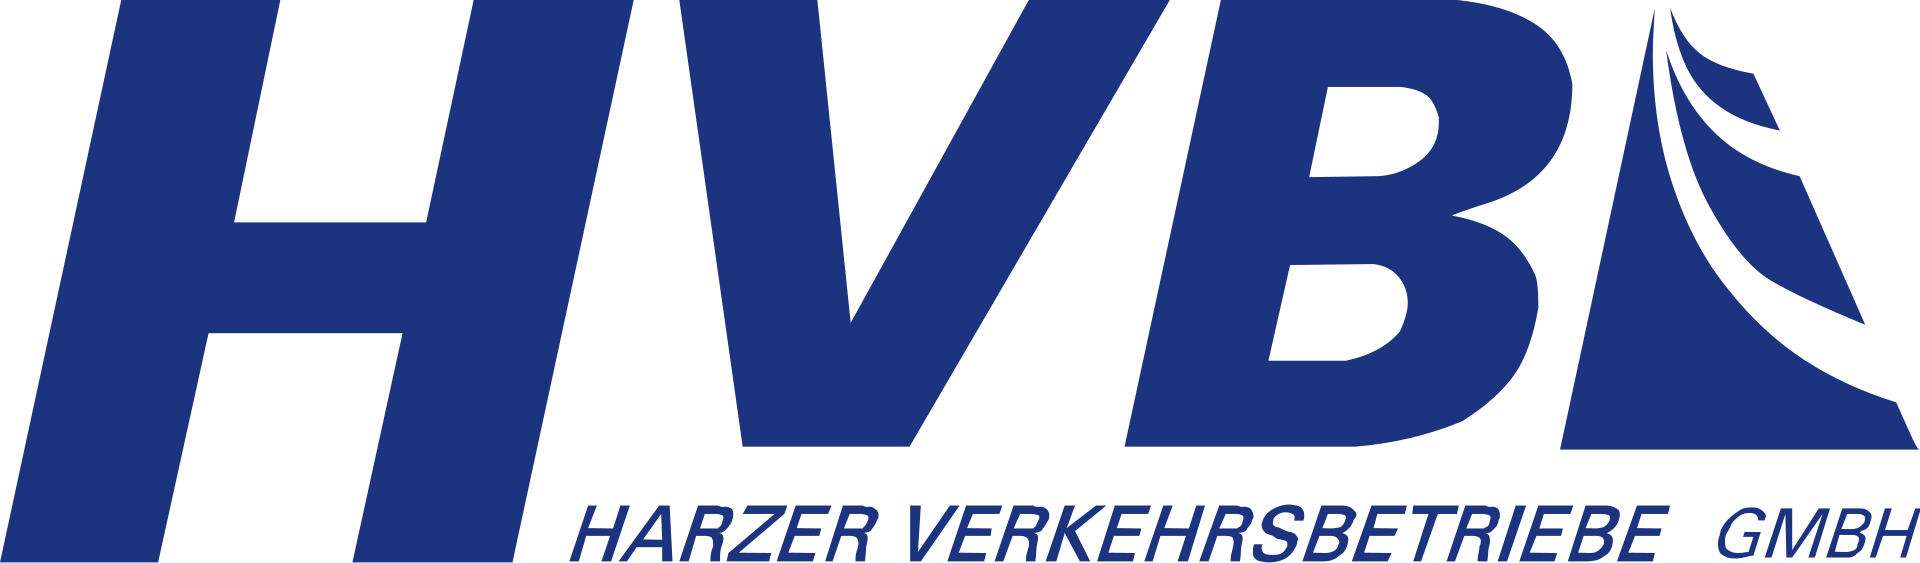 Harzer_Verkehrsbetriebe_logo.svg